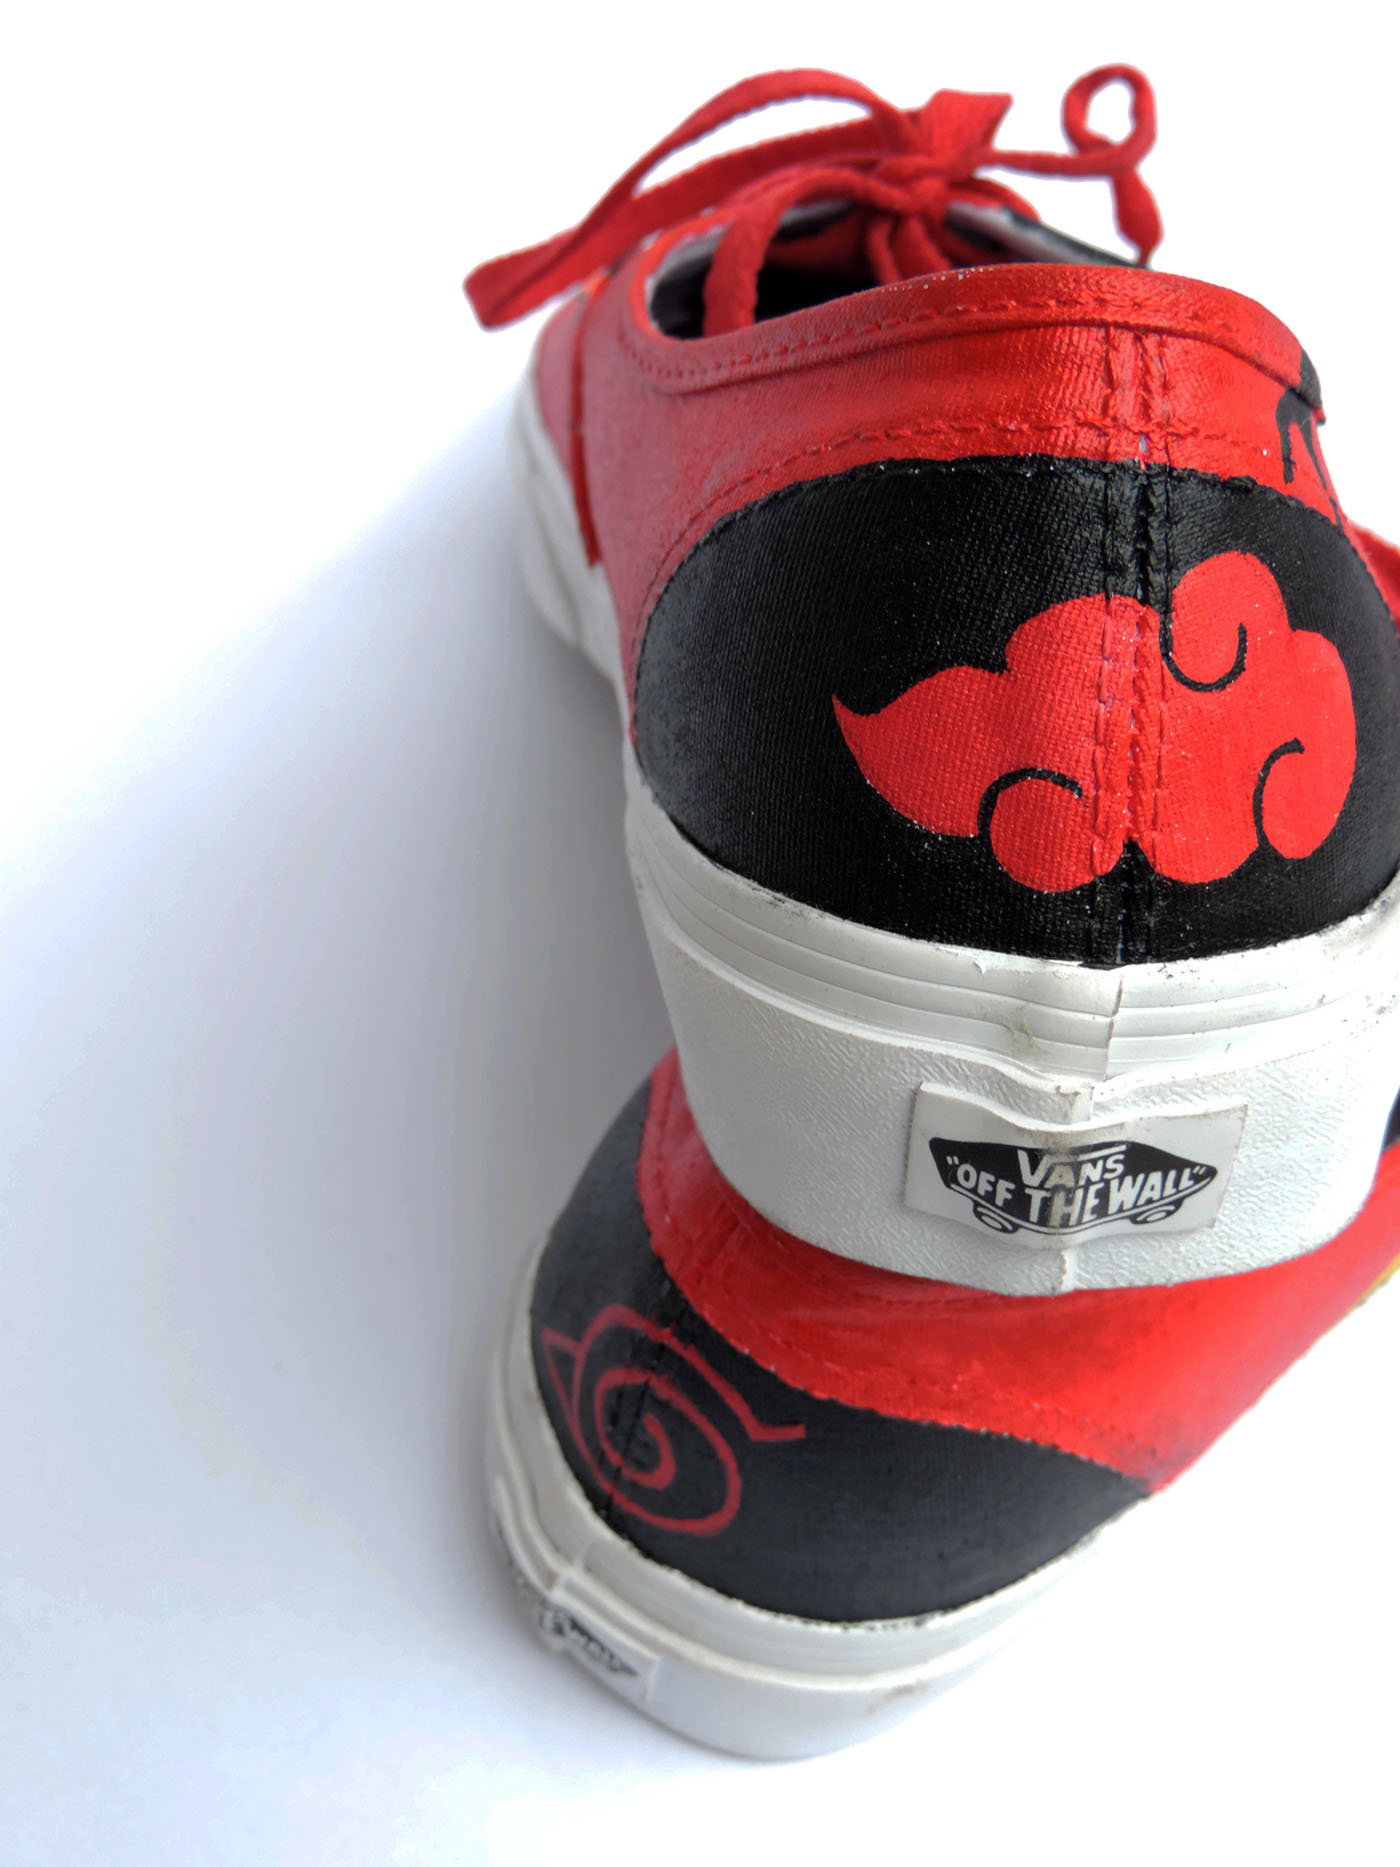 custom made shoes canvas customised shoedup shoedupbyrahul naruto animated Hand Painted